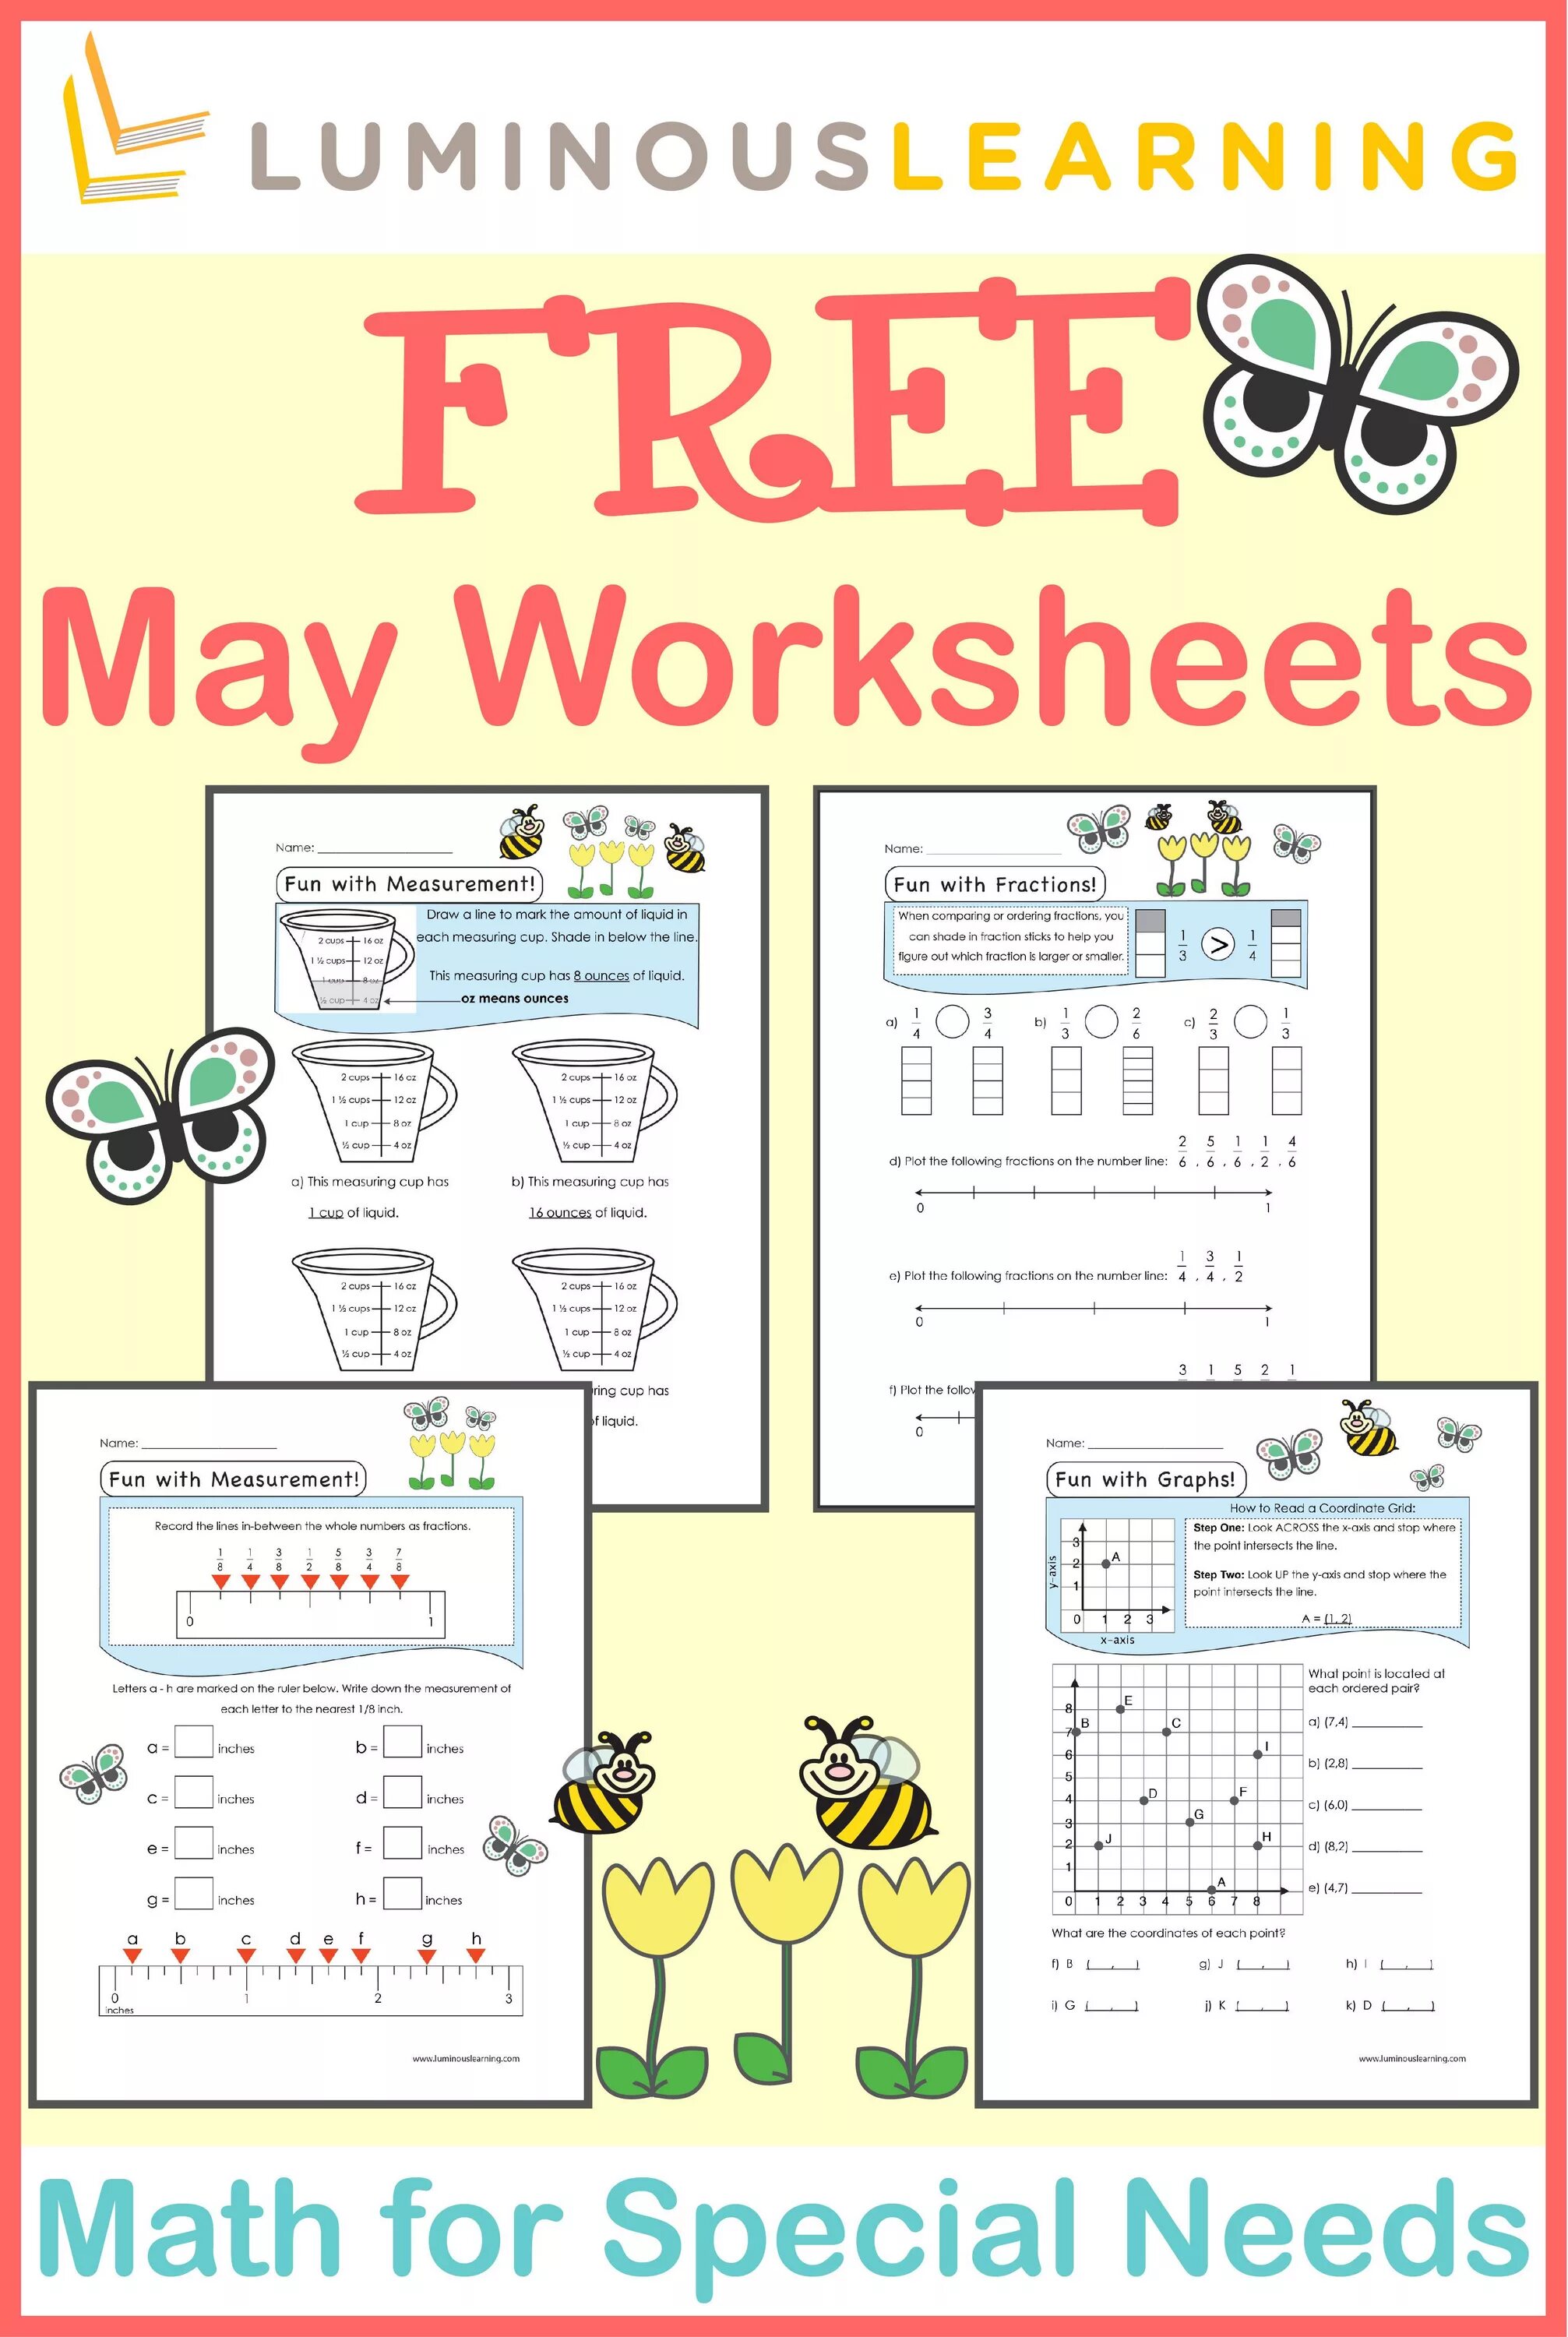 Might worksheet. May May not Worksheets. May might Worksheets. May or May Worksheets. Worksheets with May.